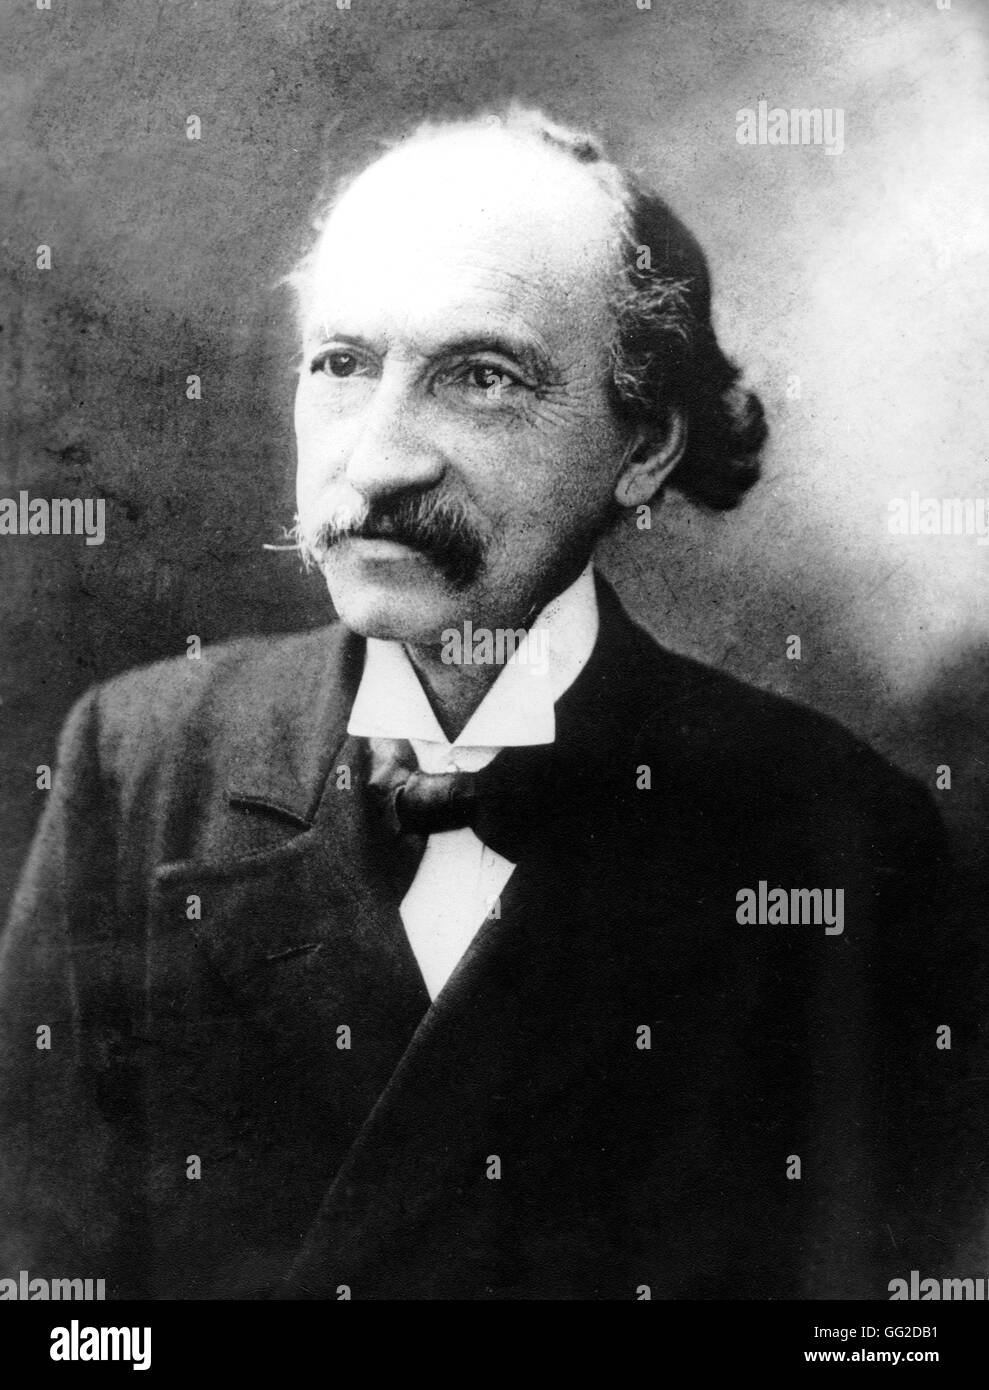 Charles Longuet (1839-1903), socialiste français, membre de l'Association internationale des travailleurs (gendre de Karl Marx, époux de Jenny Marx) 19e siècle France Banque D'Images